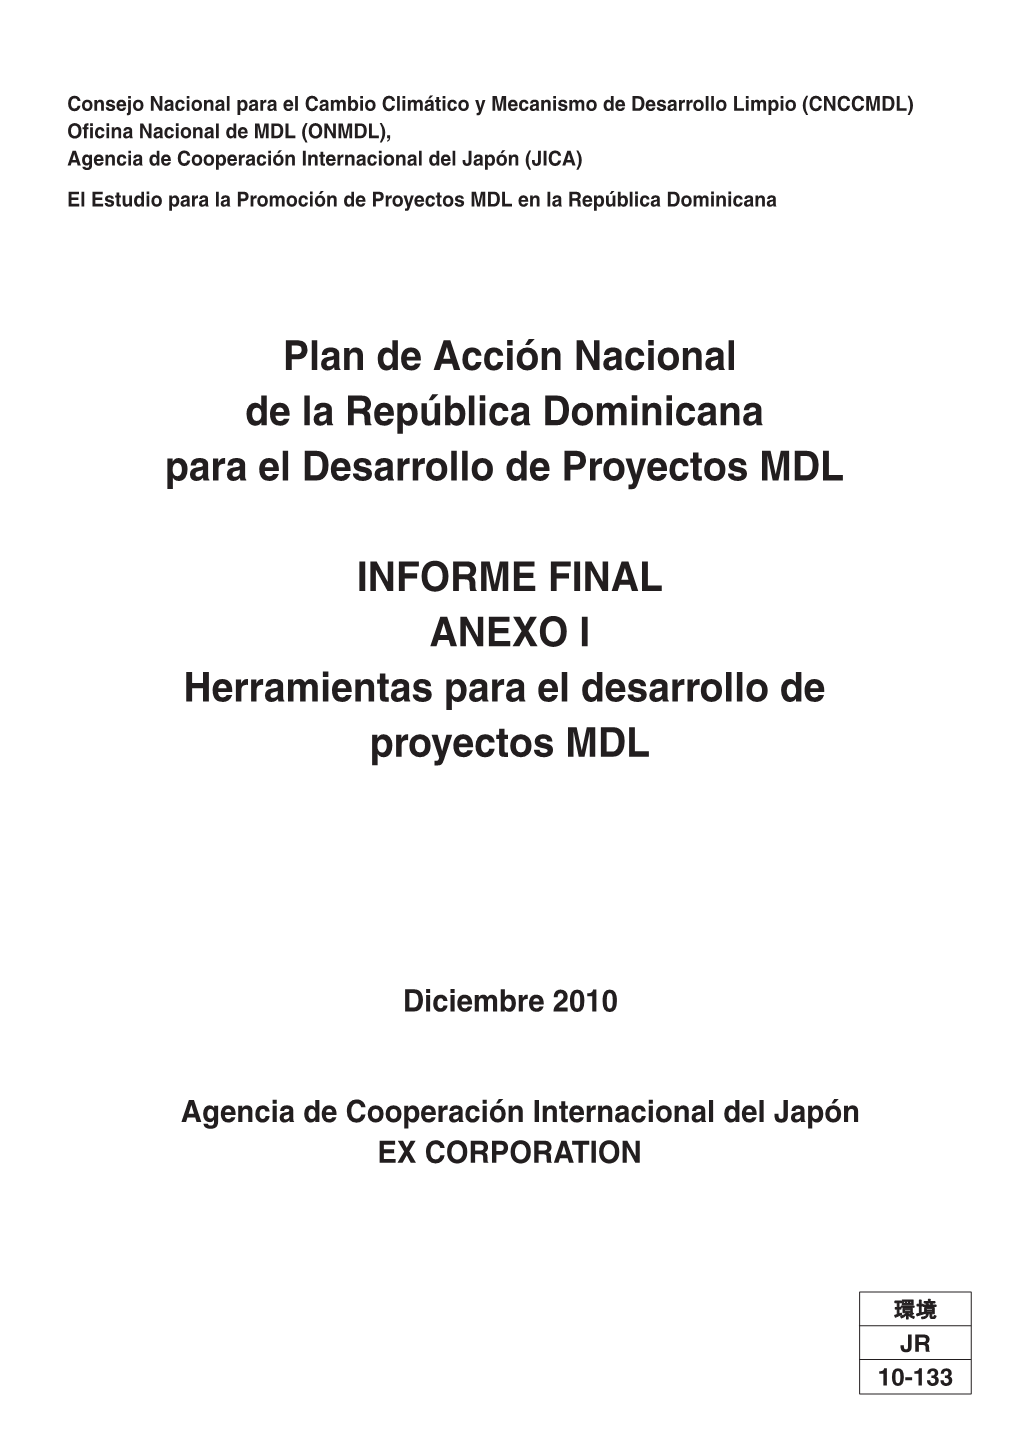 Plan De Acción Nacional De La República Dominicana Para El Desarrollo De Proyectos MDL